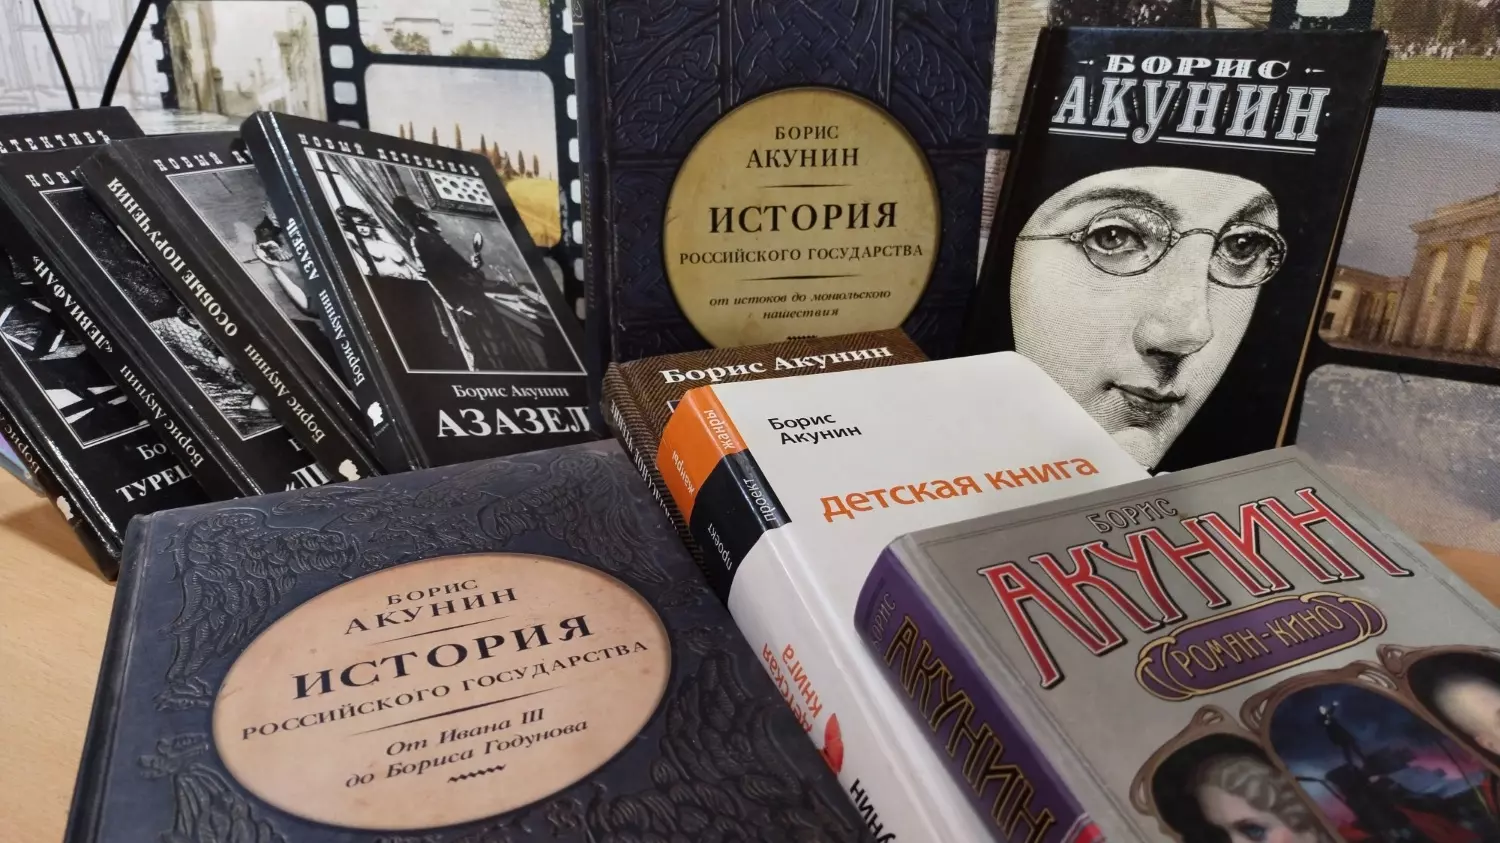 За годы творчества Акунина* в России издано несколько десятков книг писателя